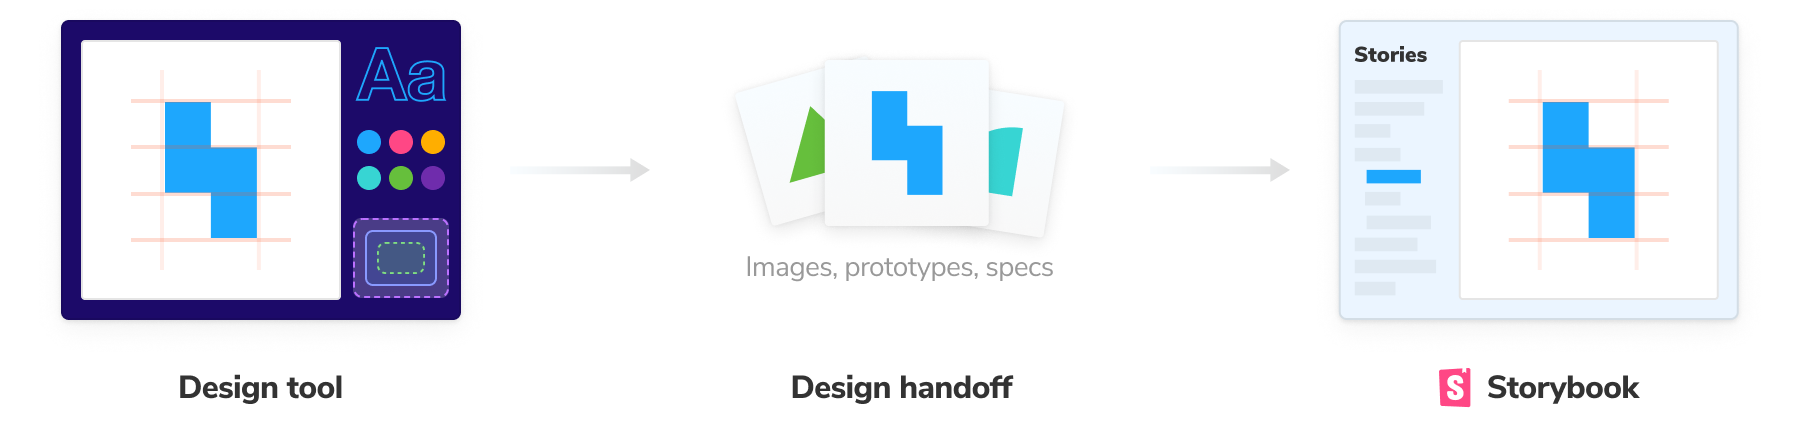 Design handoff workflow